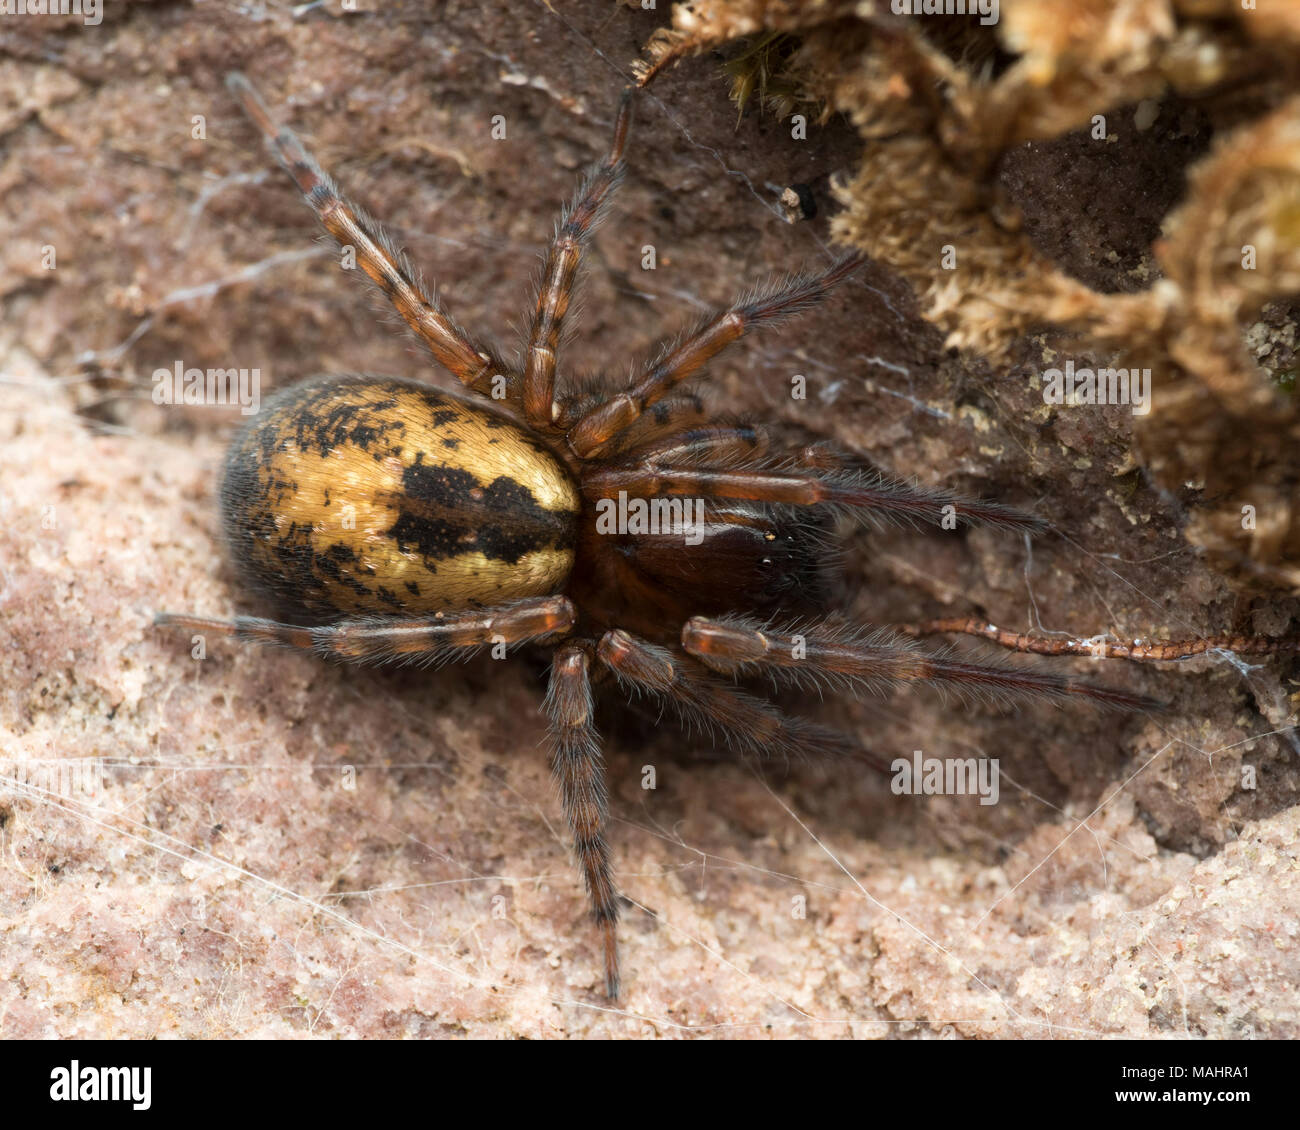 Vue dorsale de la dentelle Dentelle-robot ou spider-weaver(Amaurobius sp.) sous les écorces. Tipperary, Irlande Banque D'Images